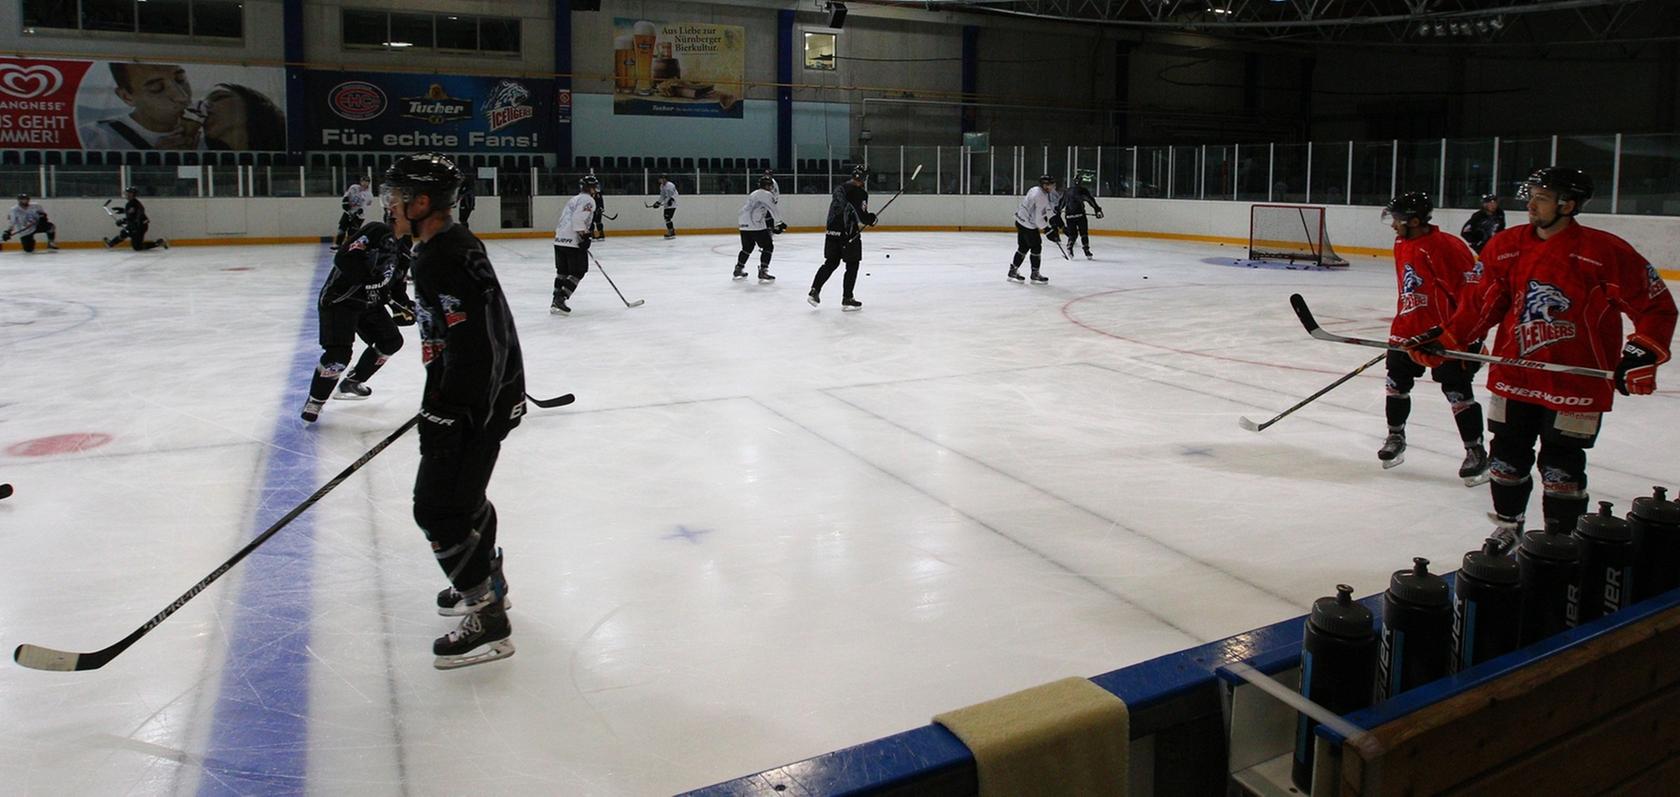 Endlich glüht das Eis am Kurt-Leucht-Weg wieder: Mit einer ersten Einheit läuteten die Ice Tigers die neue Eishockey-Saison ein.